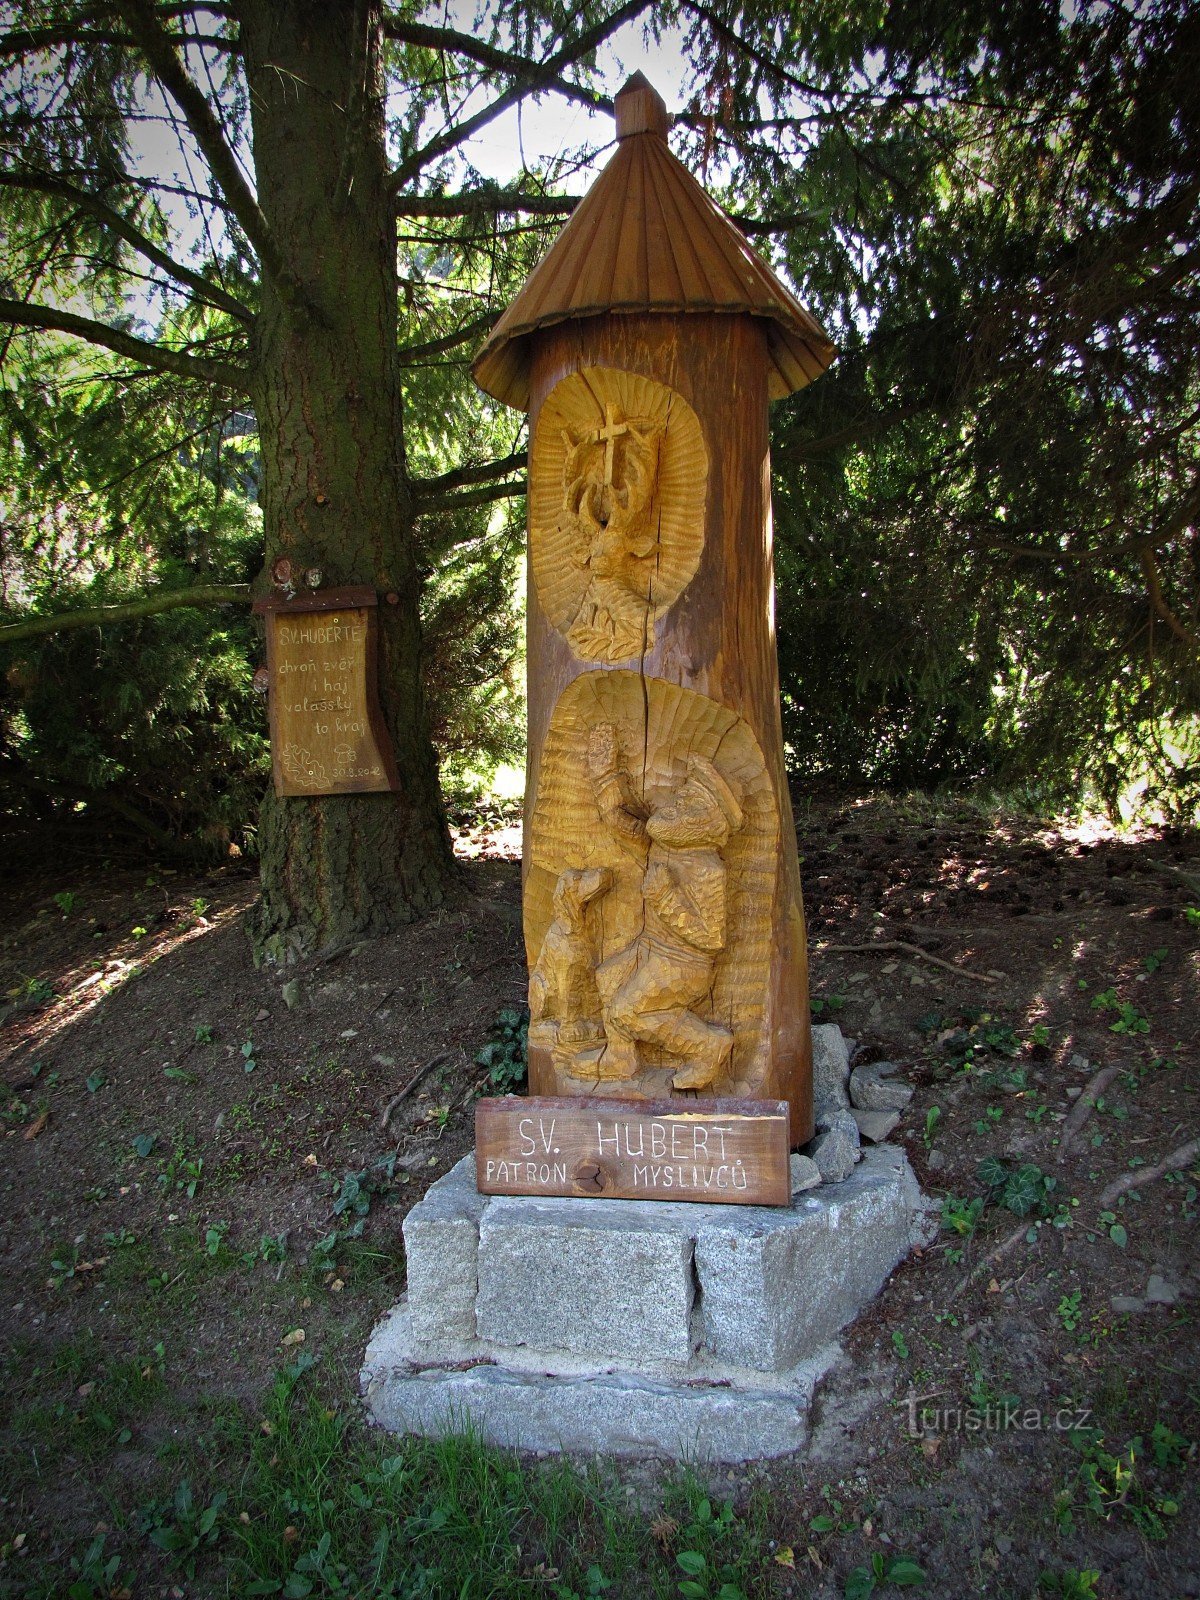 Pomník sv.Huberta u Liptálu